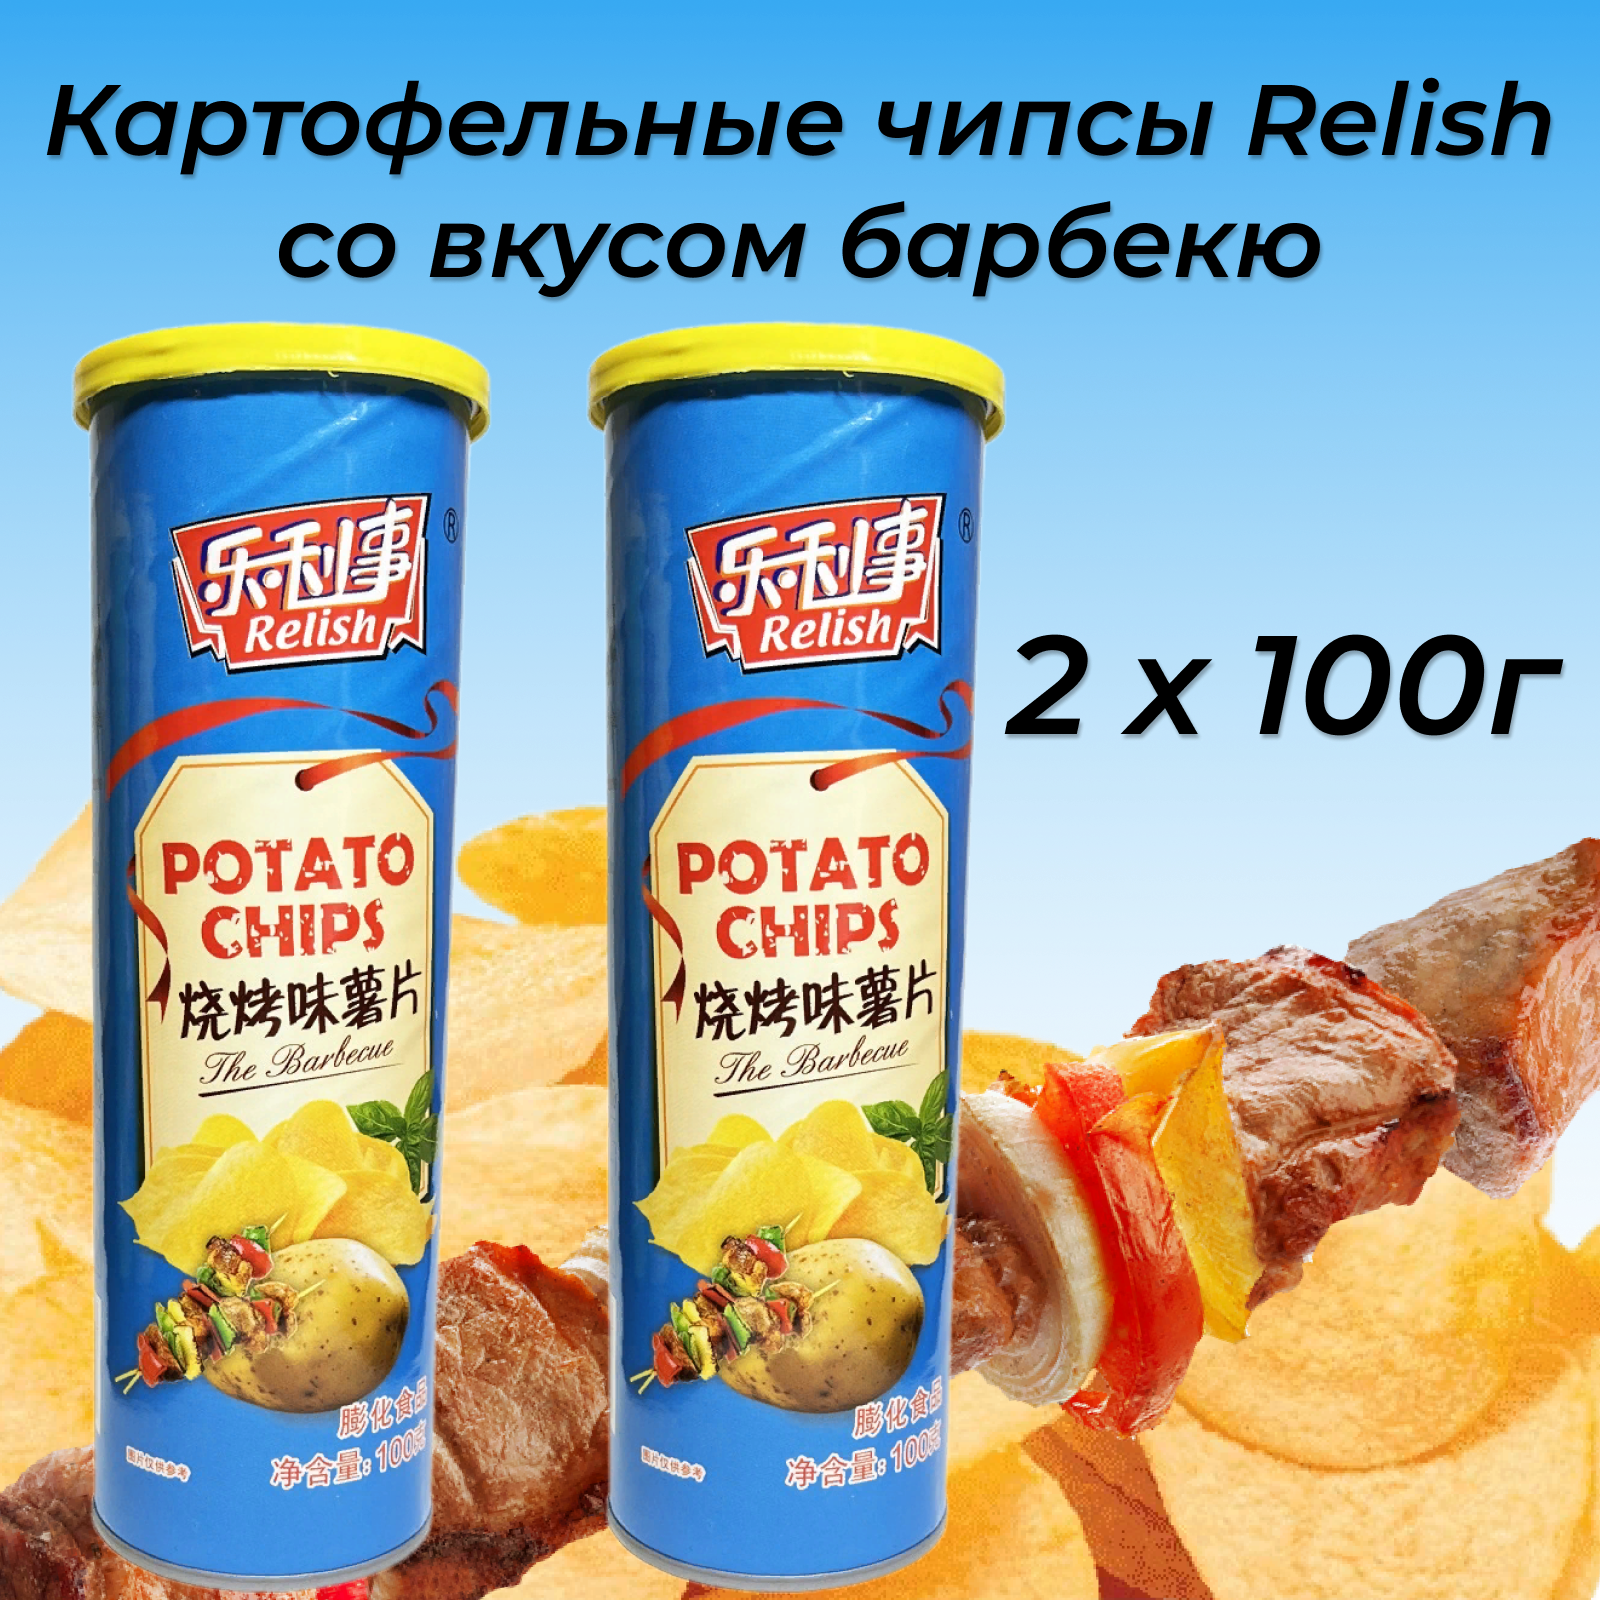 Чипсы картофельные Relish со вкусом барбекю, 2 х 100г. Китай